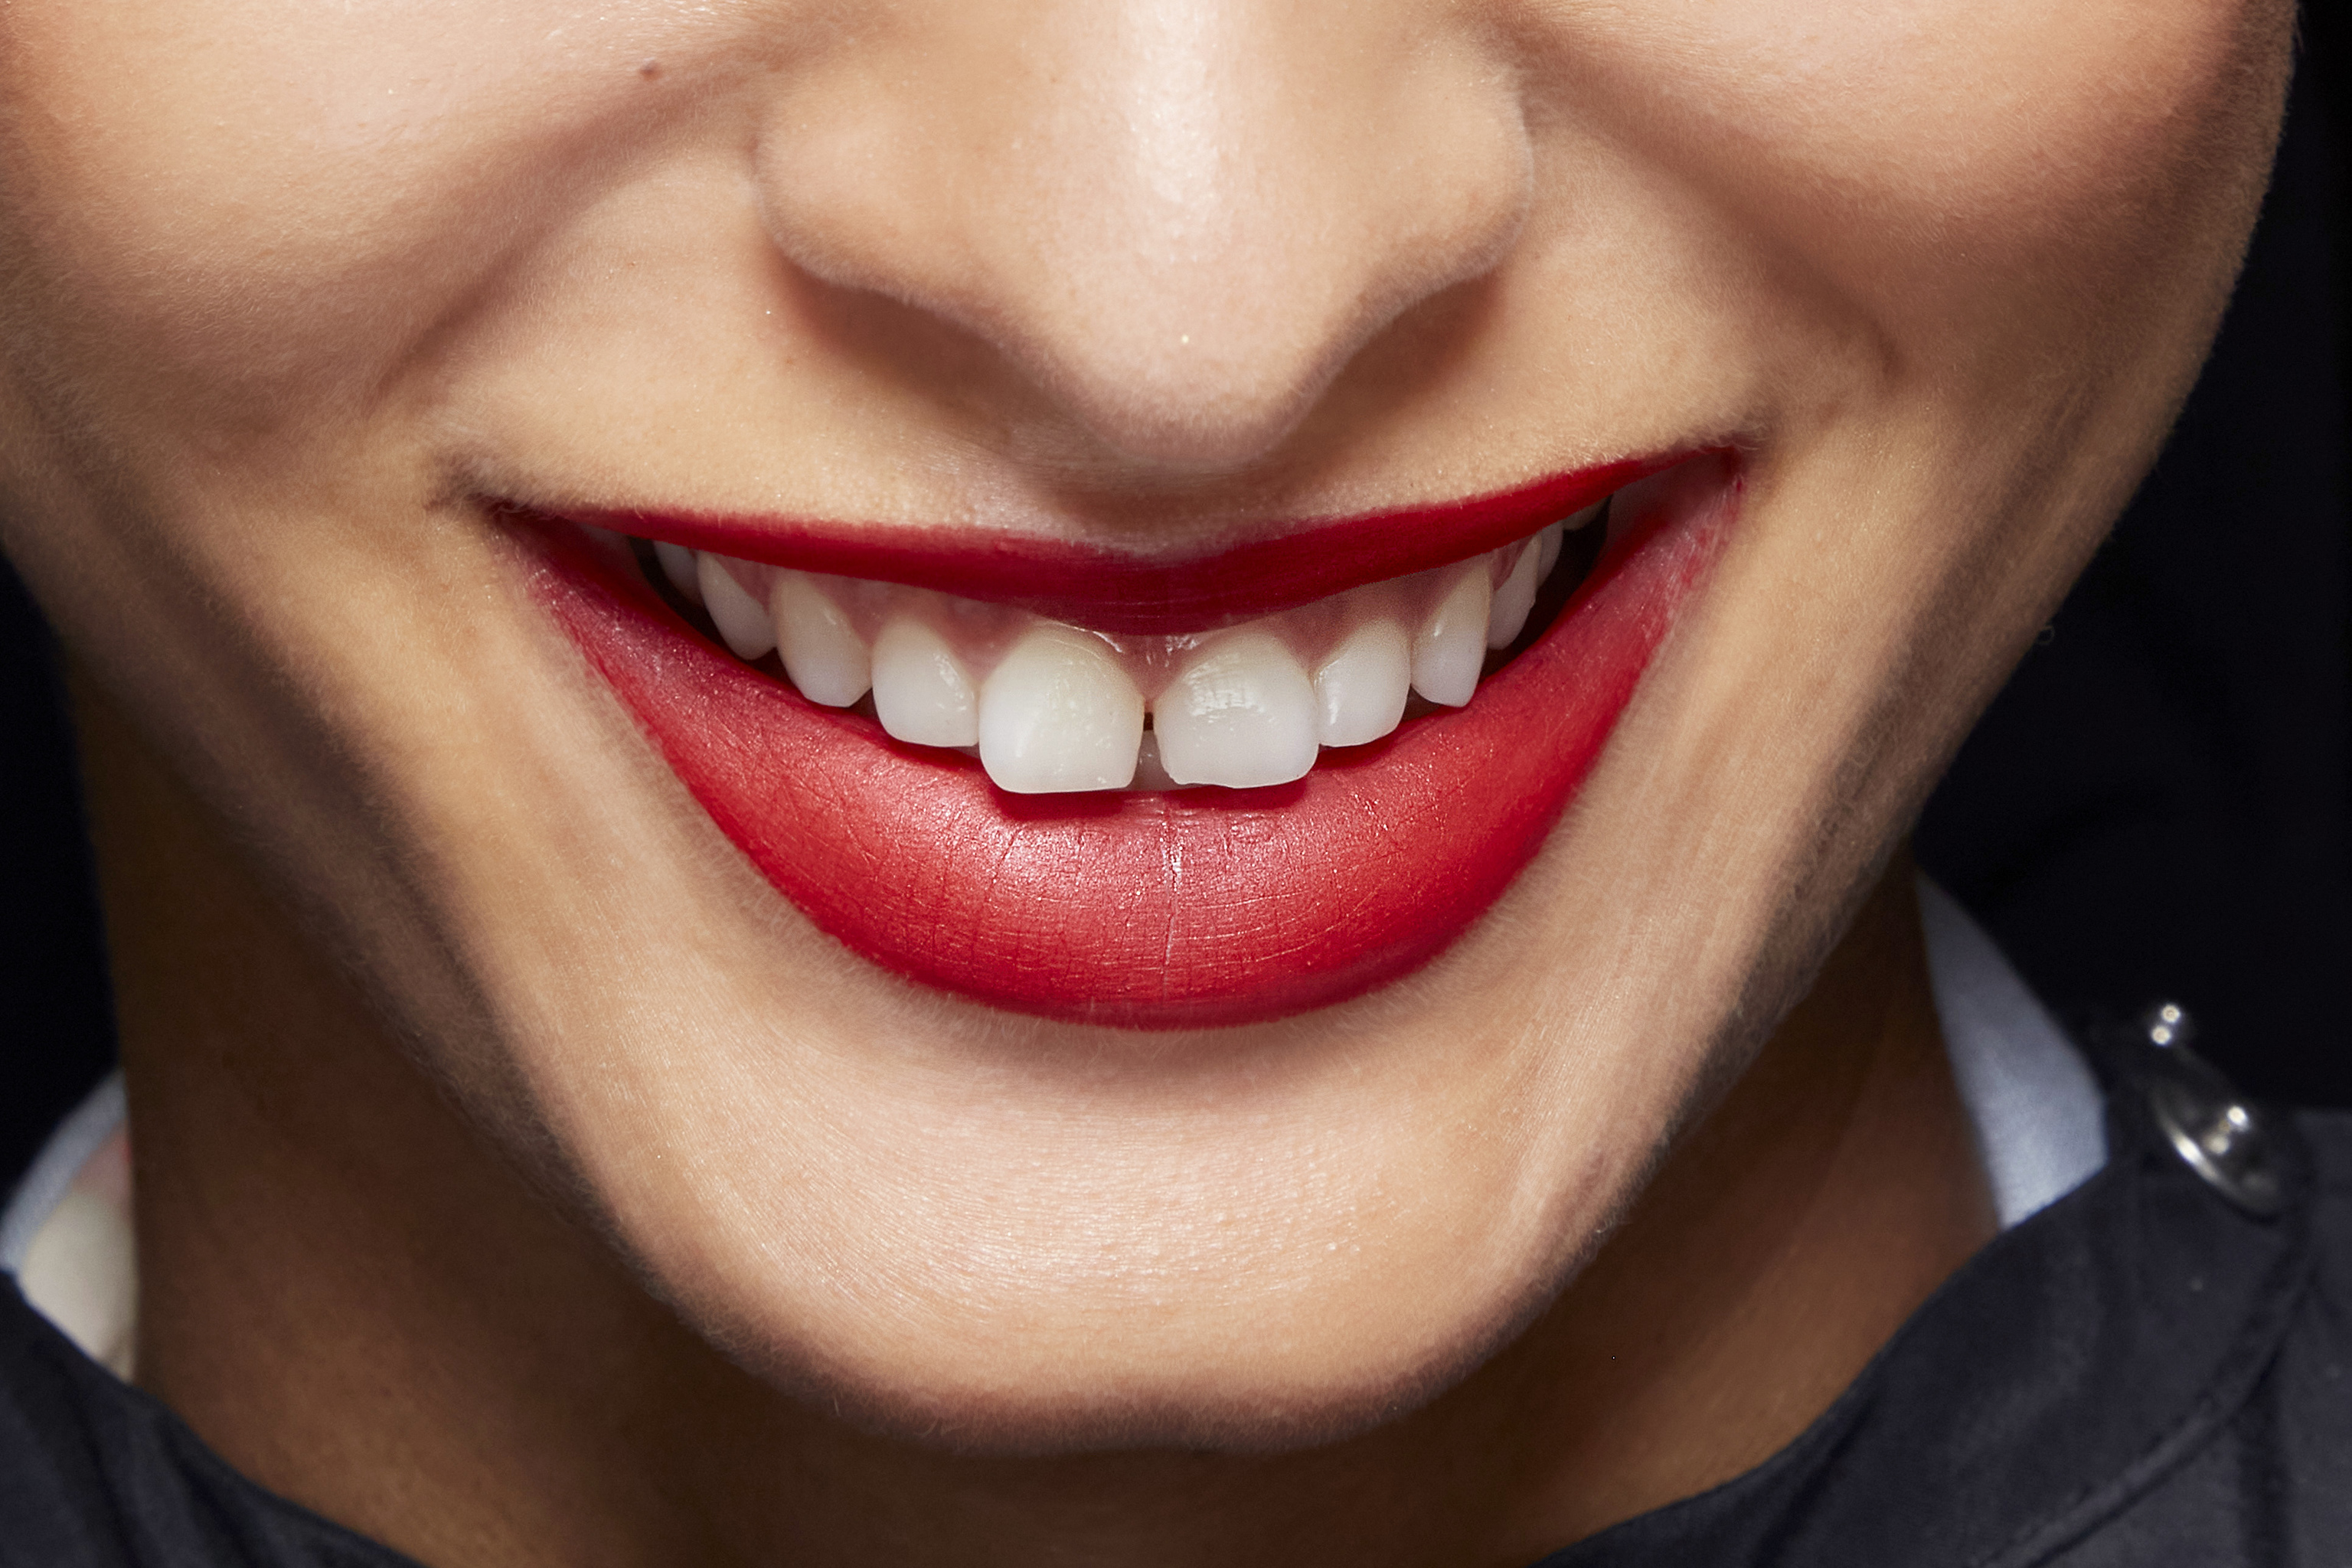 Siempre a favor de los dientes blancos, pero cuidado con los blanqueamientos excesivos y sus consecuencias.